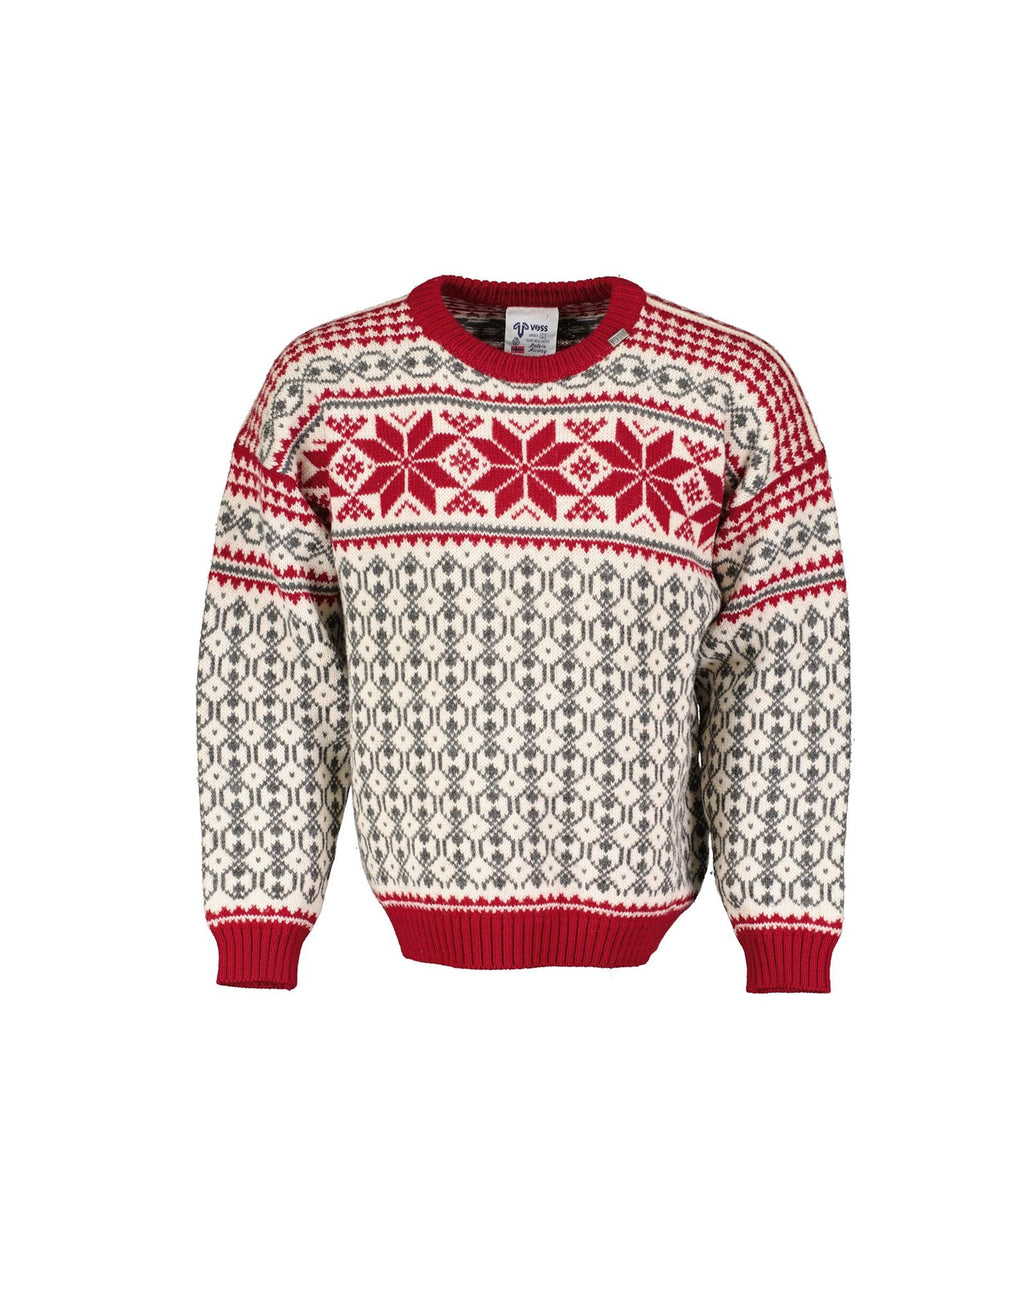 VOSS Scandinavian Wool Red Unisex Sweater, L